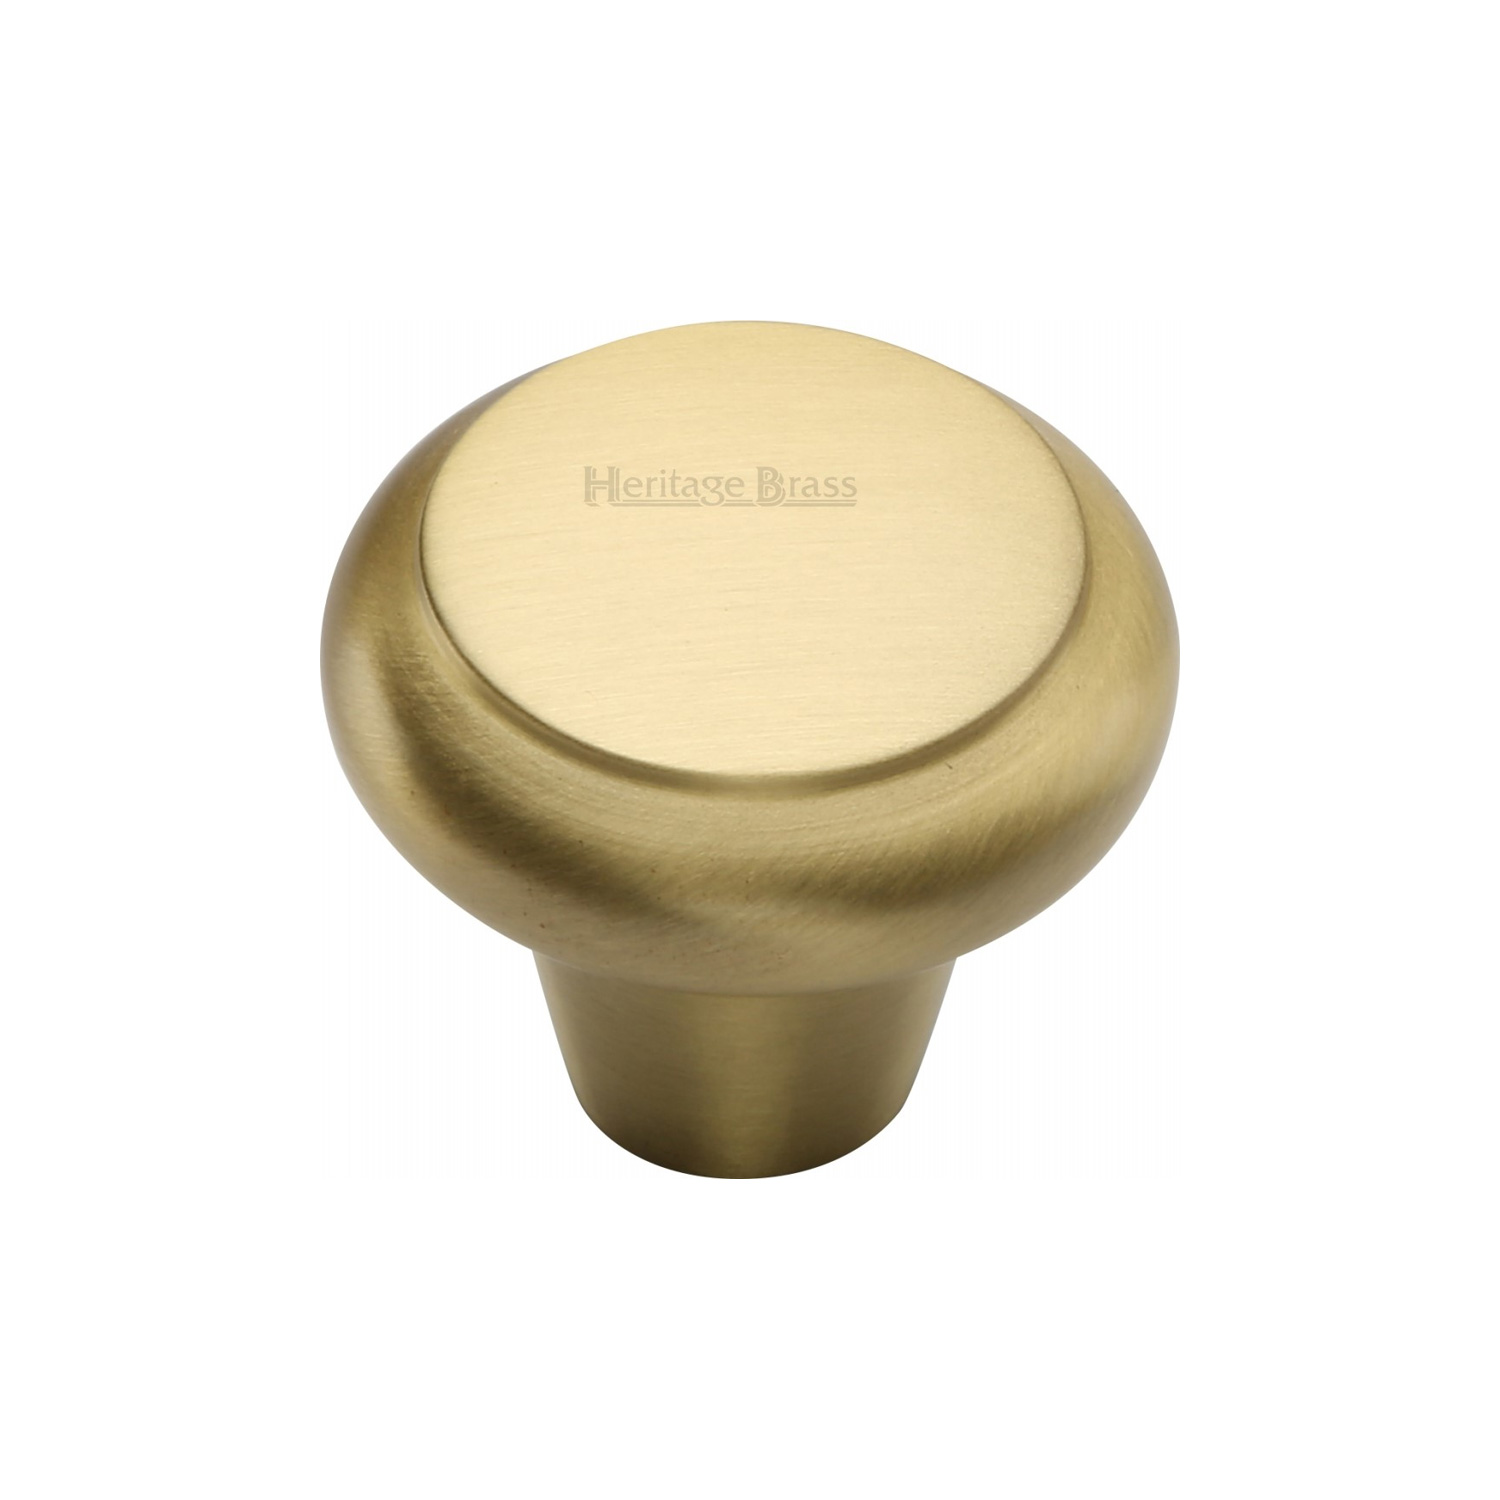 Heritage Brass Cabinet Knob Round Edge Design 38mm